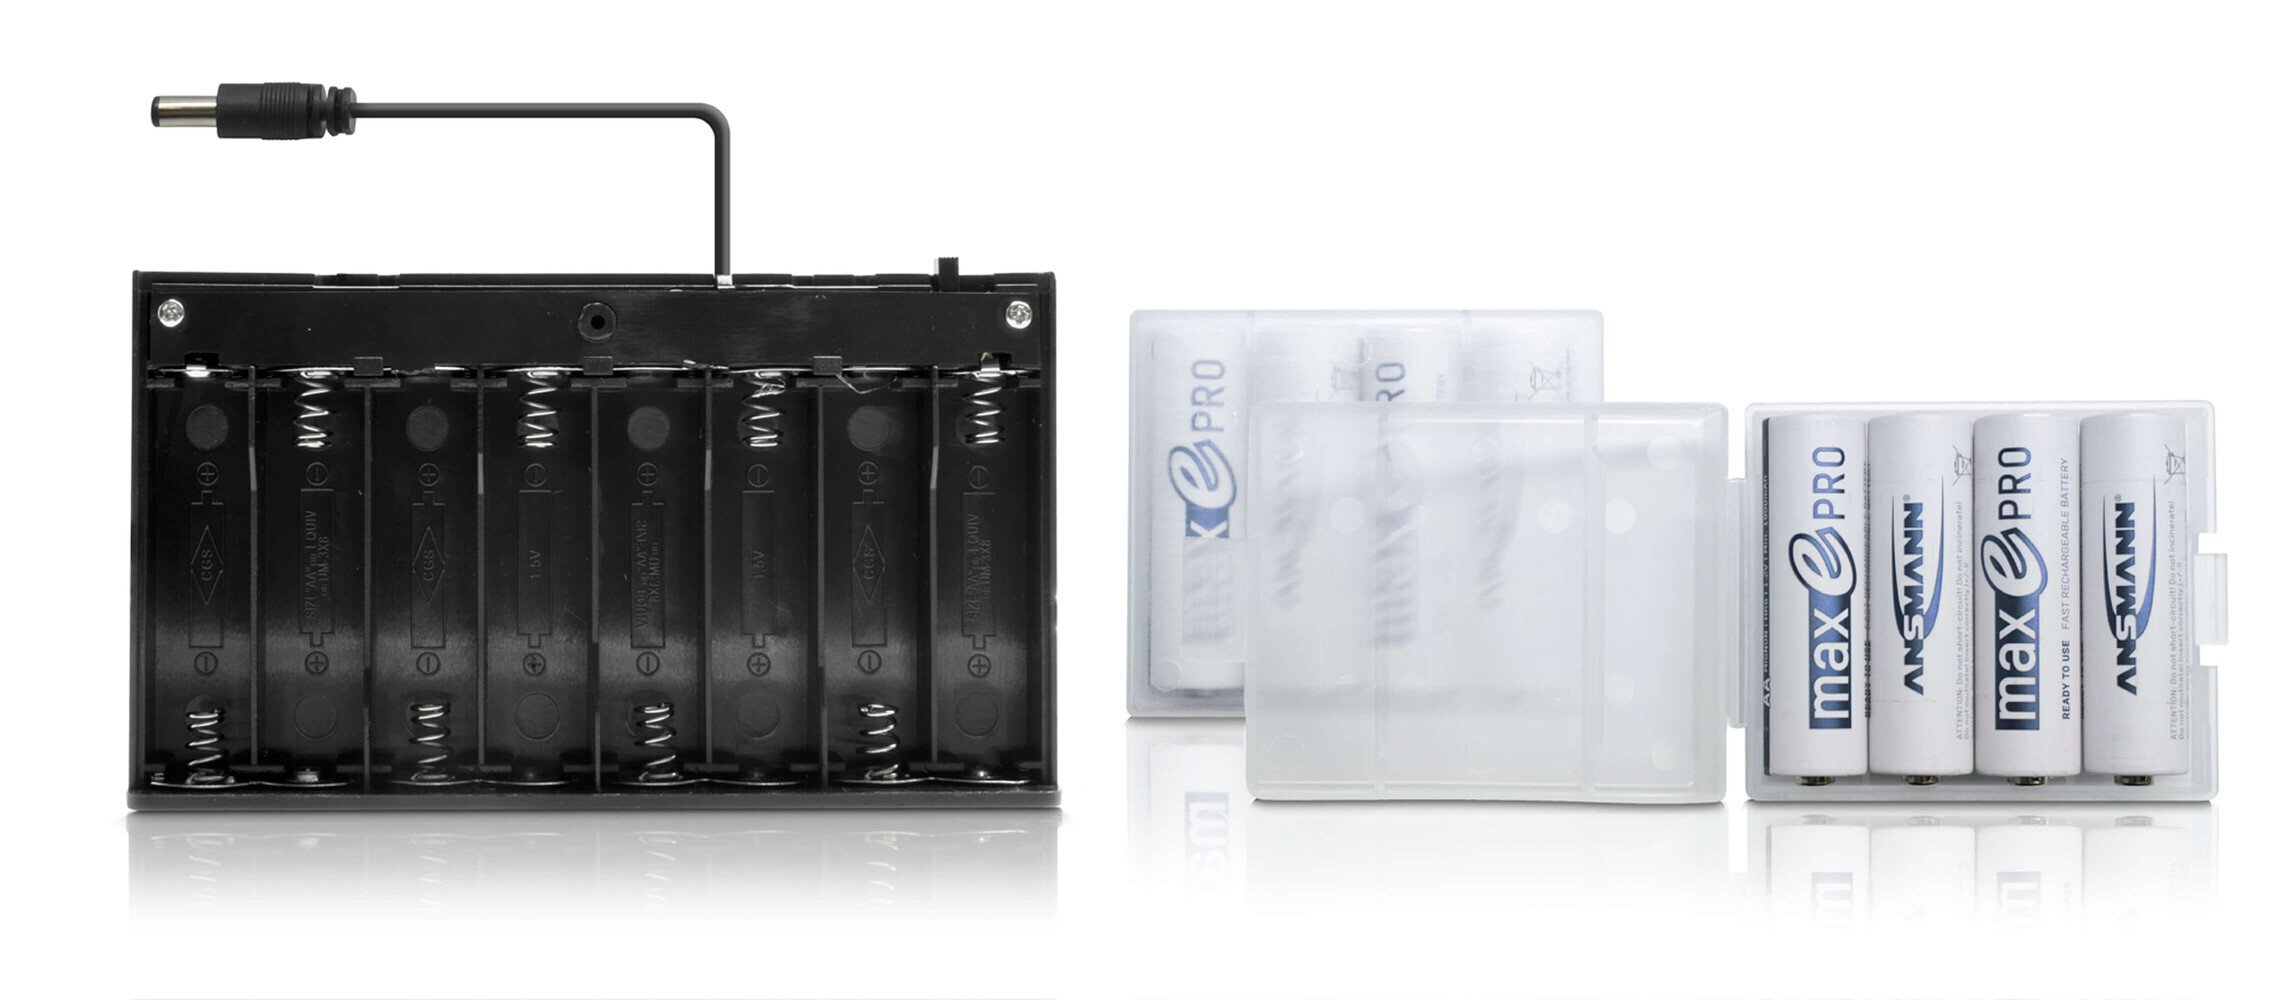 LED Universum Batteriebox für mobile LED Anwendungen mit Batterien von NA - praktisch und zuverlässig